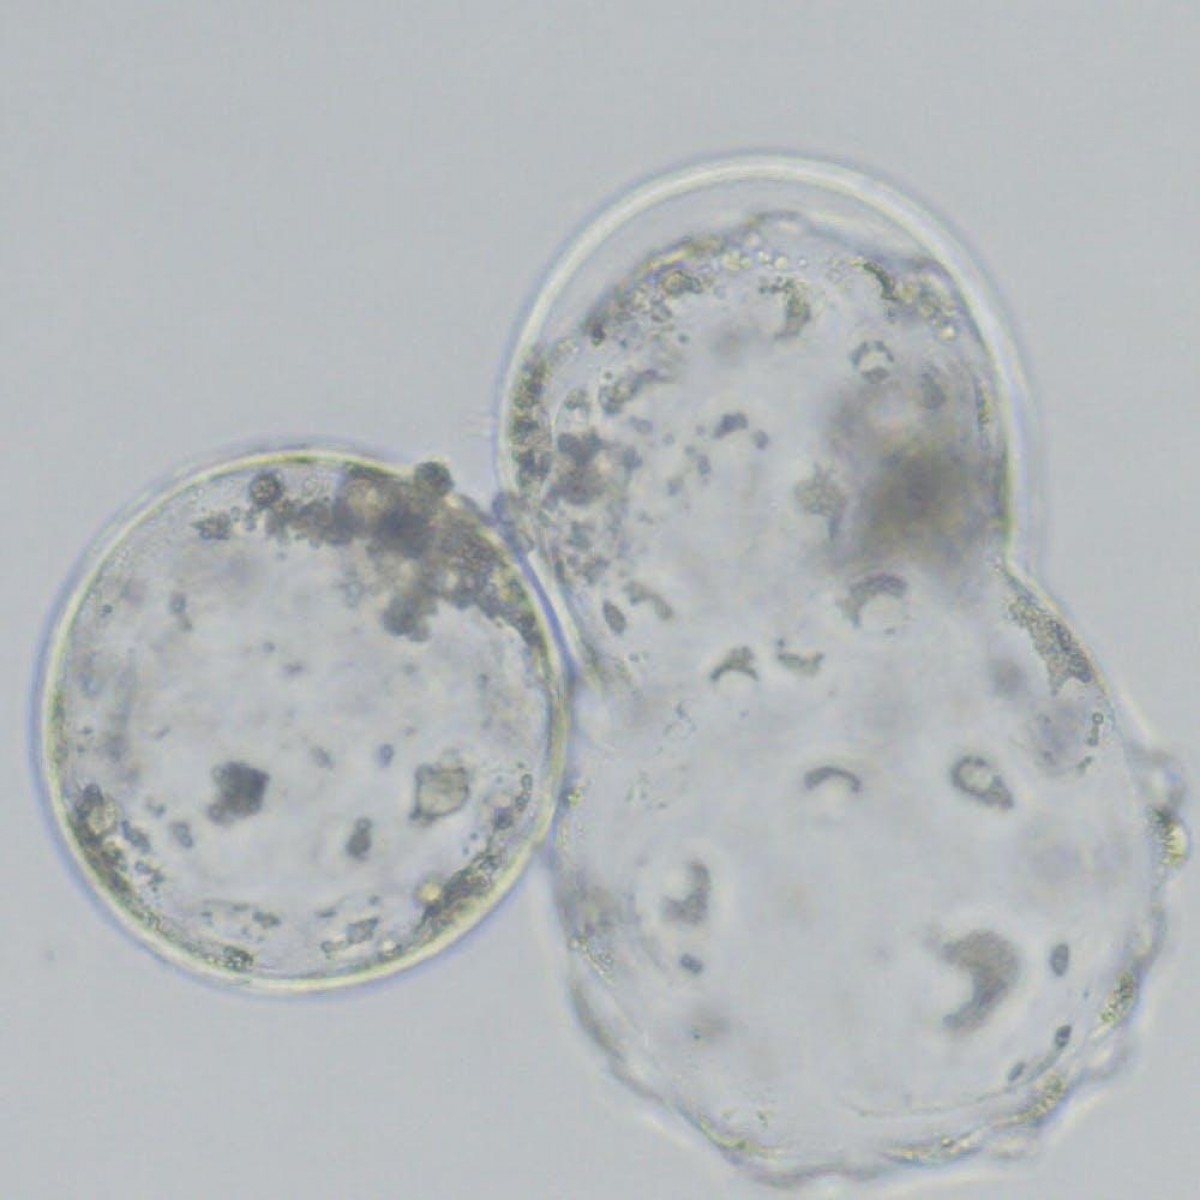 Imagen de embriones. (Imagen: Ana Josefa Soler)